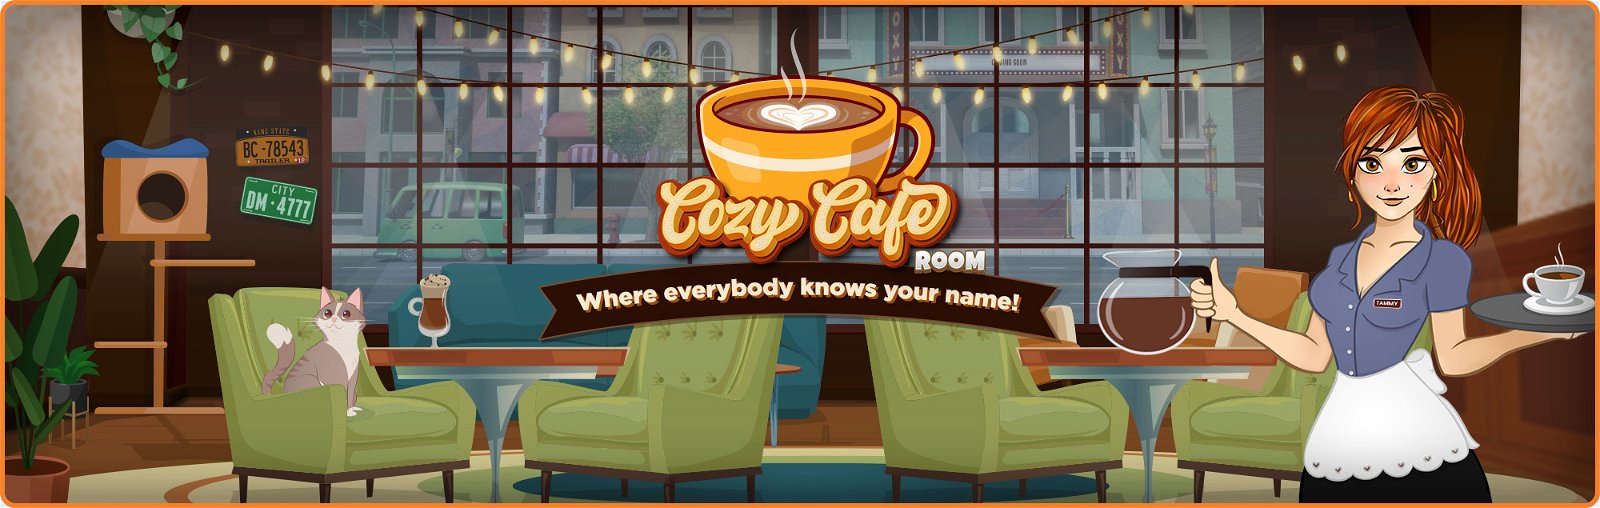 Cozy Cafe Bingo Room